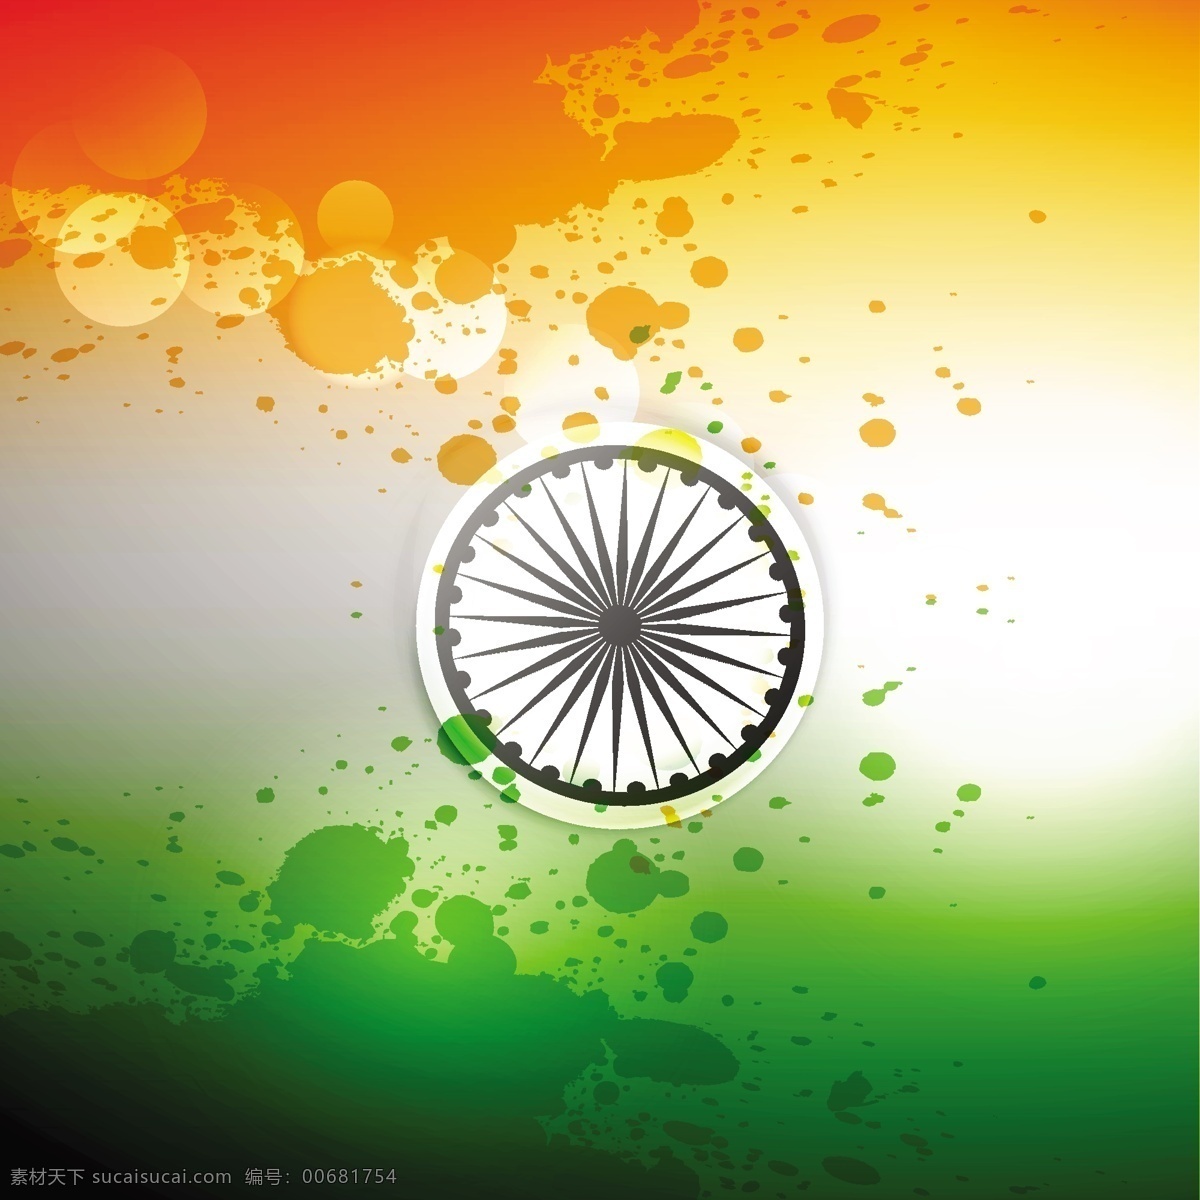 蹩脚 印度 国旗 背景摘要 垃圾 节日 假日 轮 和平 印度国旗 独立日 国家 自由 天 政府 爱国 一月 独立 民主 白色